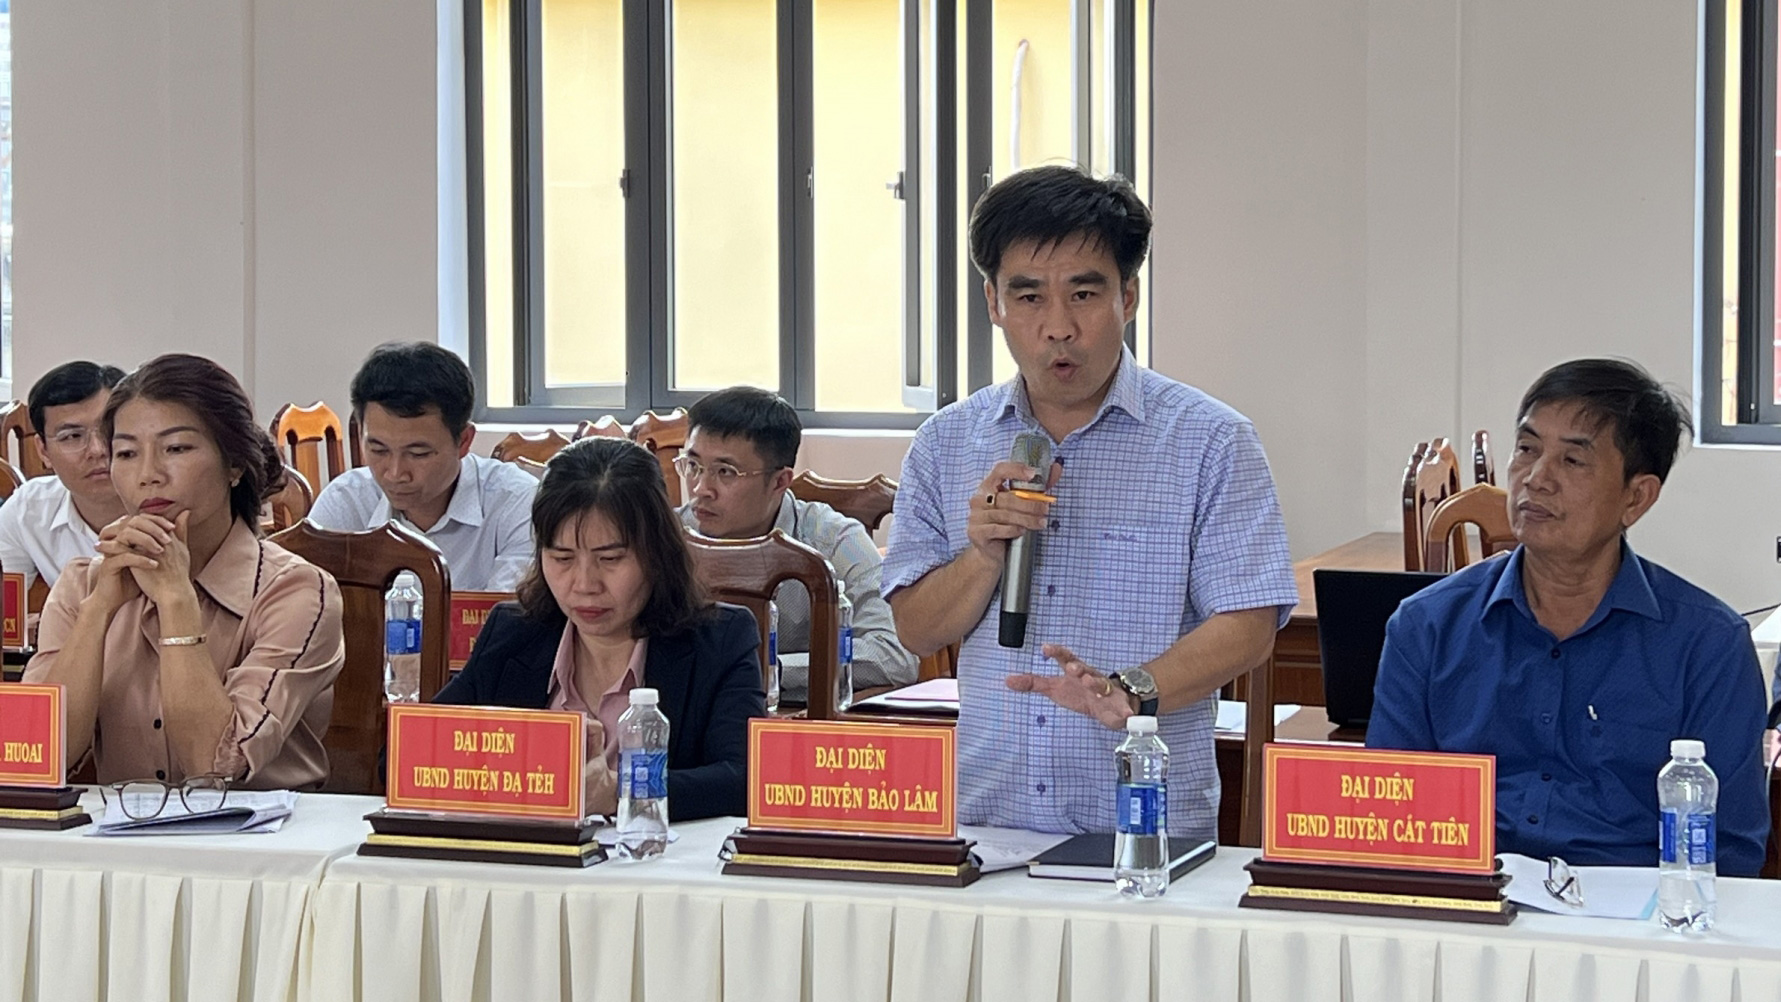 Đại diện đơn vị đăng cai - huyện Bảo Lâm phát biểu tại hội nghị